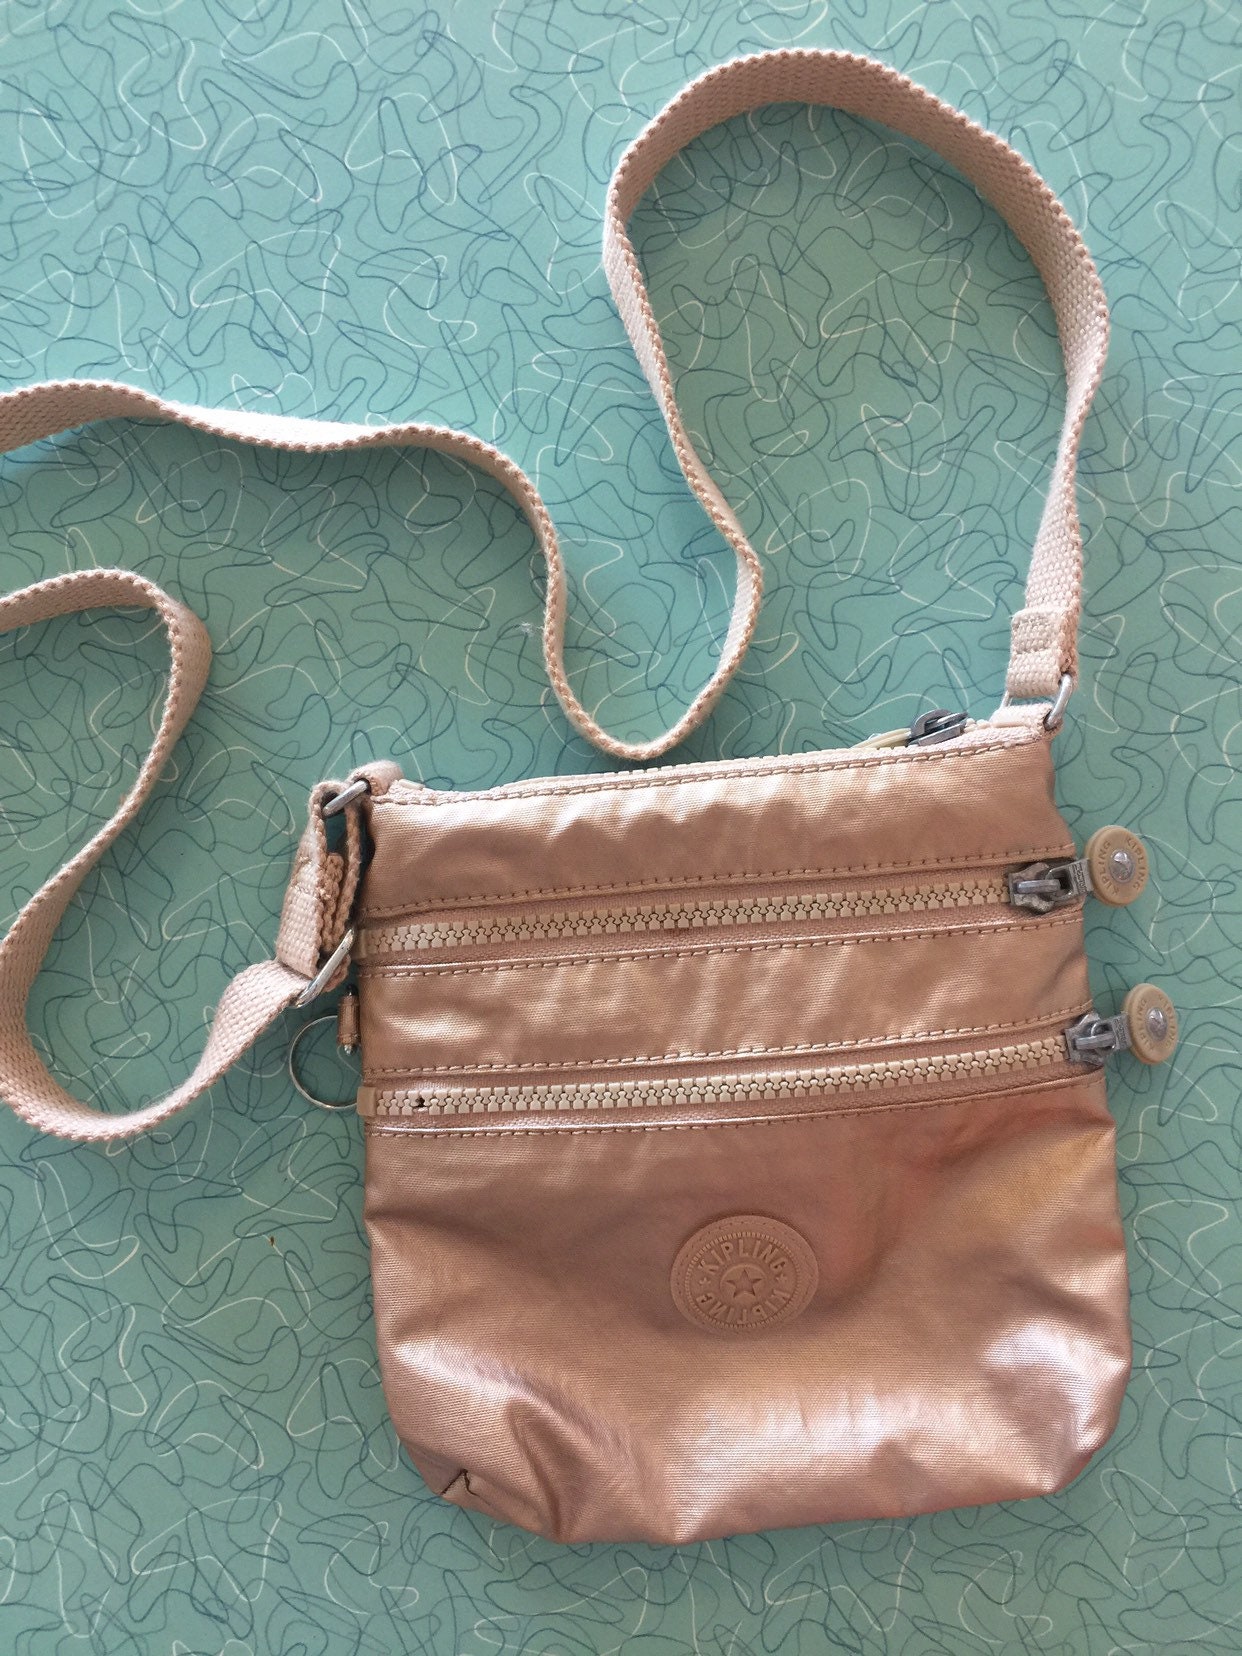 Kipling Keiko Metallic Glow Crossbody Bag